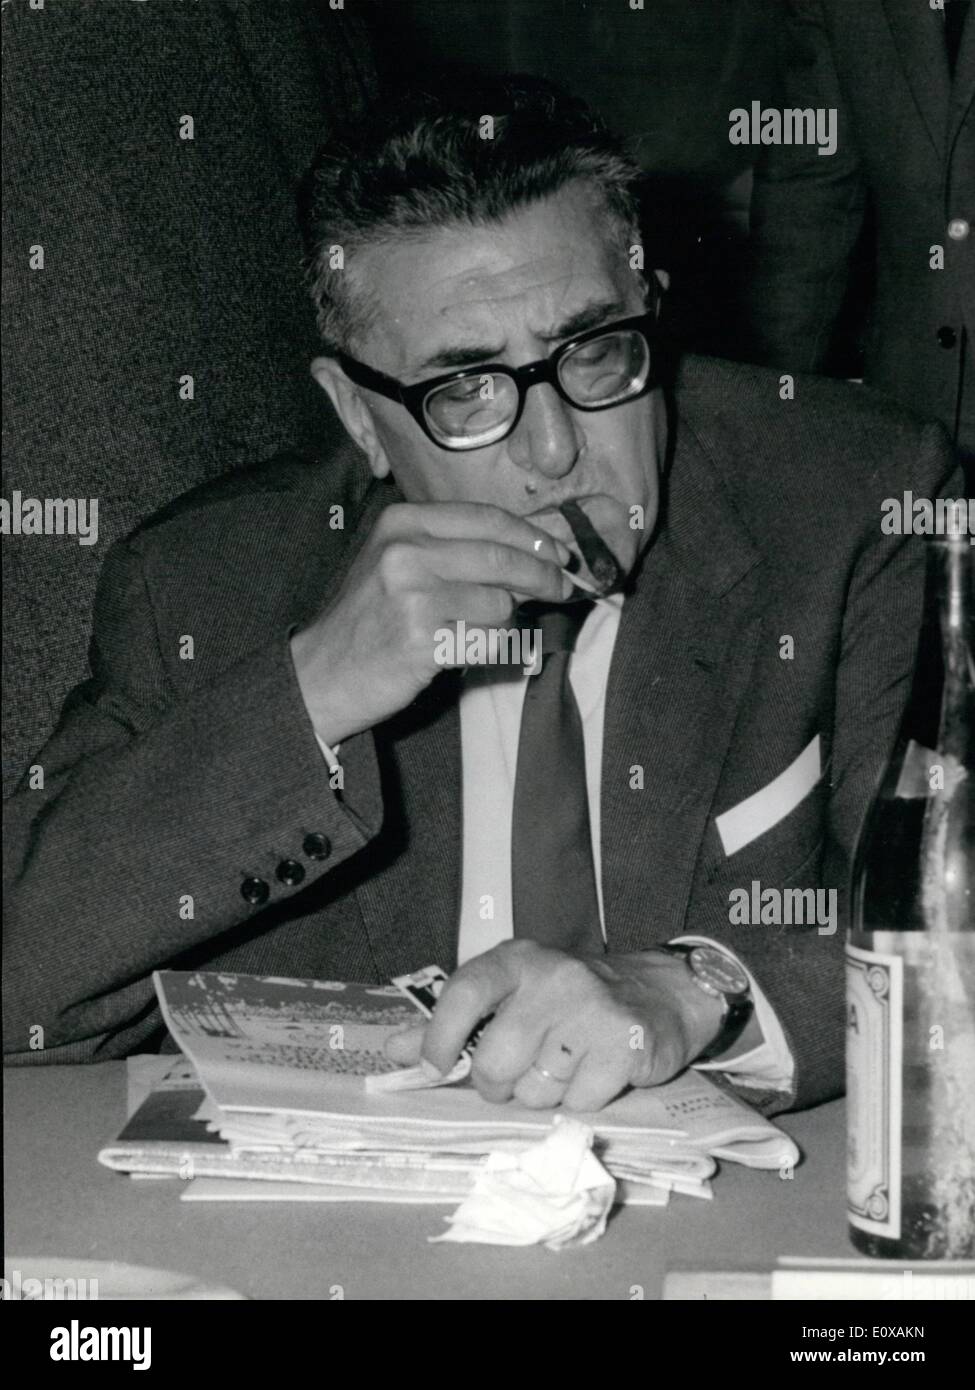 Nov. 11, 1965 - LA XXXVI Assemblea del Partito Socialista Italiano (P.S.I.) è stato inaugurato oggi a Roma presso il Palazzo dei Congressi. Mostra fotografica di hon. Riccardo Lombardi, leader della sinistra del partito. Foto Stock